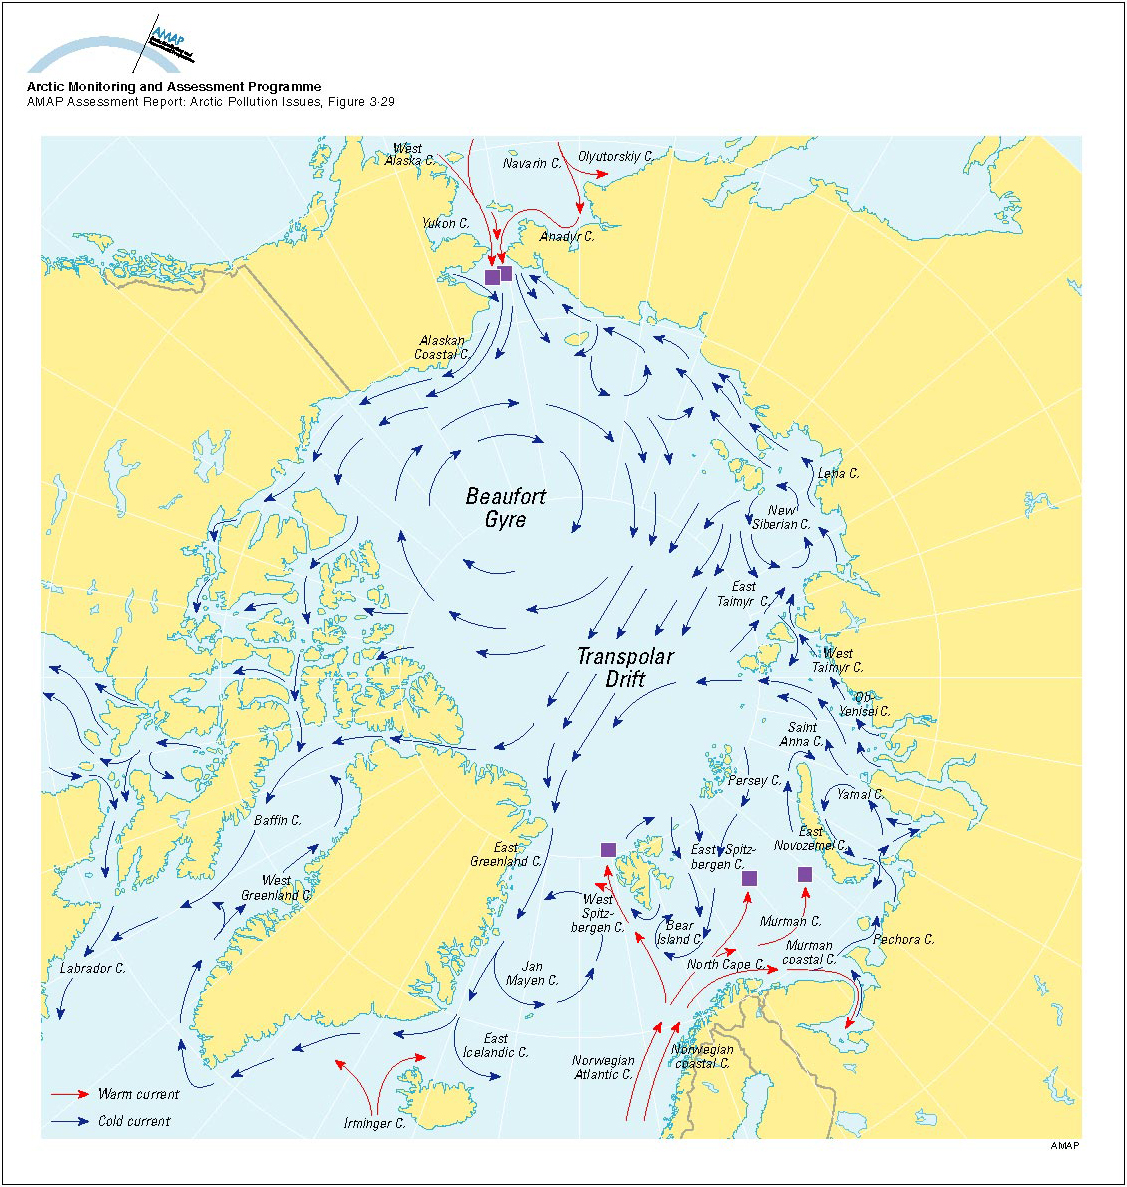 Теплое течение ледовитого океана. Течения Северного Ледовитого океана на карте. Карта морских течений Северного Ледовитого океана. Течения Северного Ледовитого океана теплые и холодные на карте. Течение морей Северного Ледовитого океана.